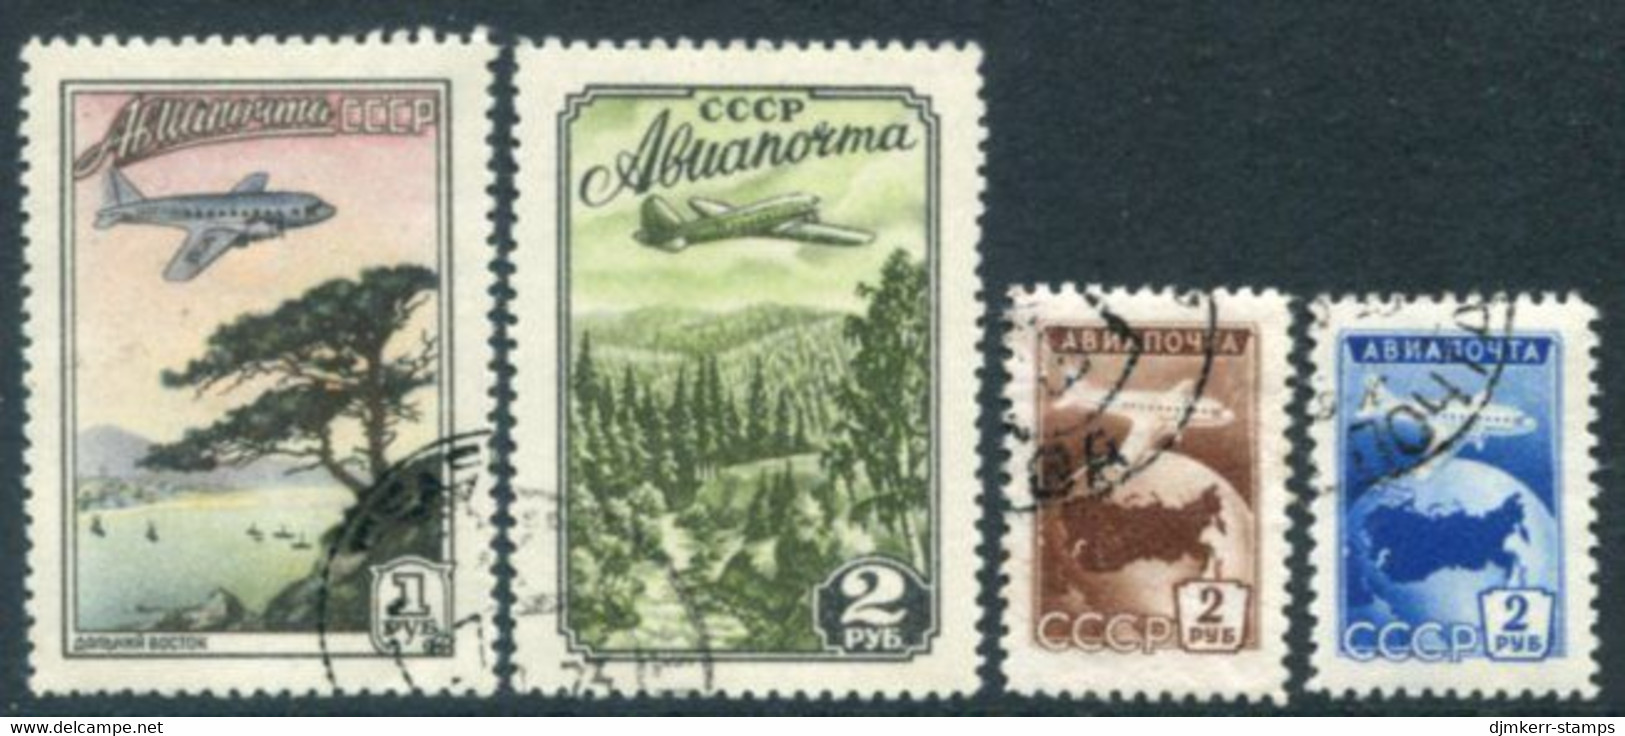 SOVIET UNION 1955 Airmail Definitive Used.  Michel 1749A,1760-62 - Oblitérés